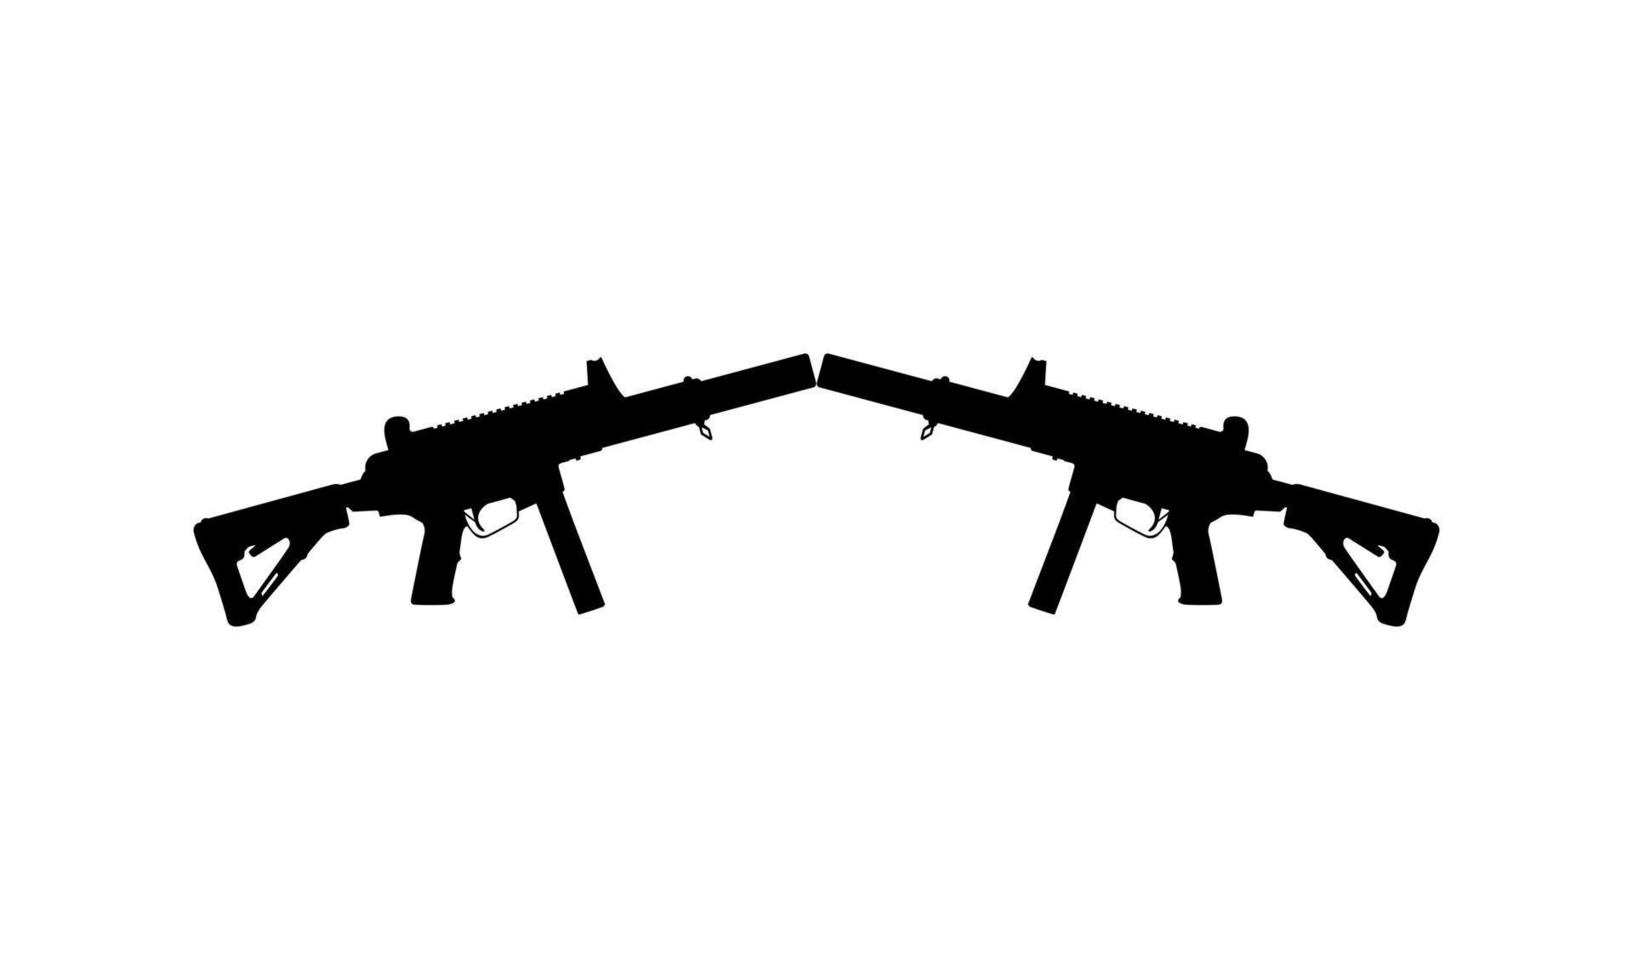 silhuett av pistol pistol för logotyp, piktogram, konst illustration, hemsida eller grafisk design element. vektor illustration